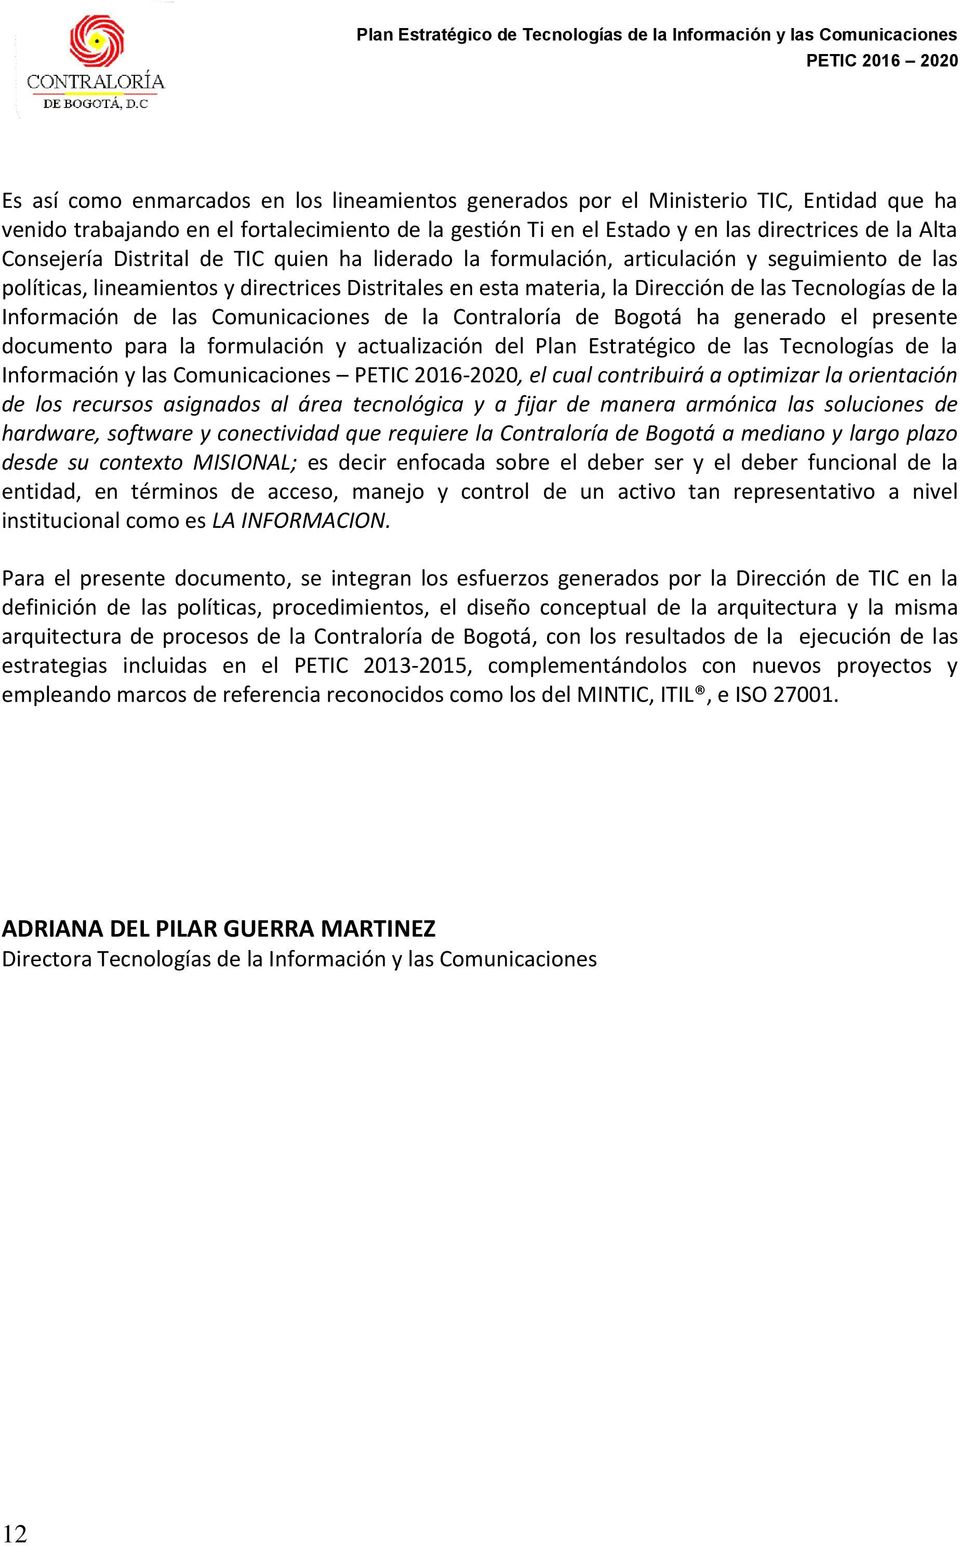 la Información de las Comunicaciones de la Contraloría de Bogotá ha generado el presente documento para la formulación y actualización del Plan Estratégico de las Tecnologías de la Información y las